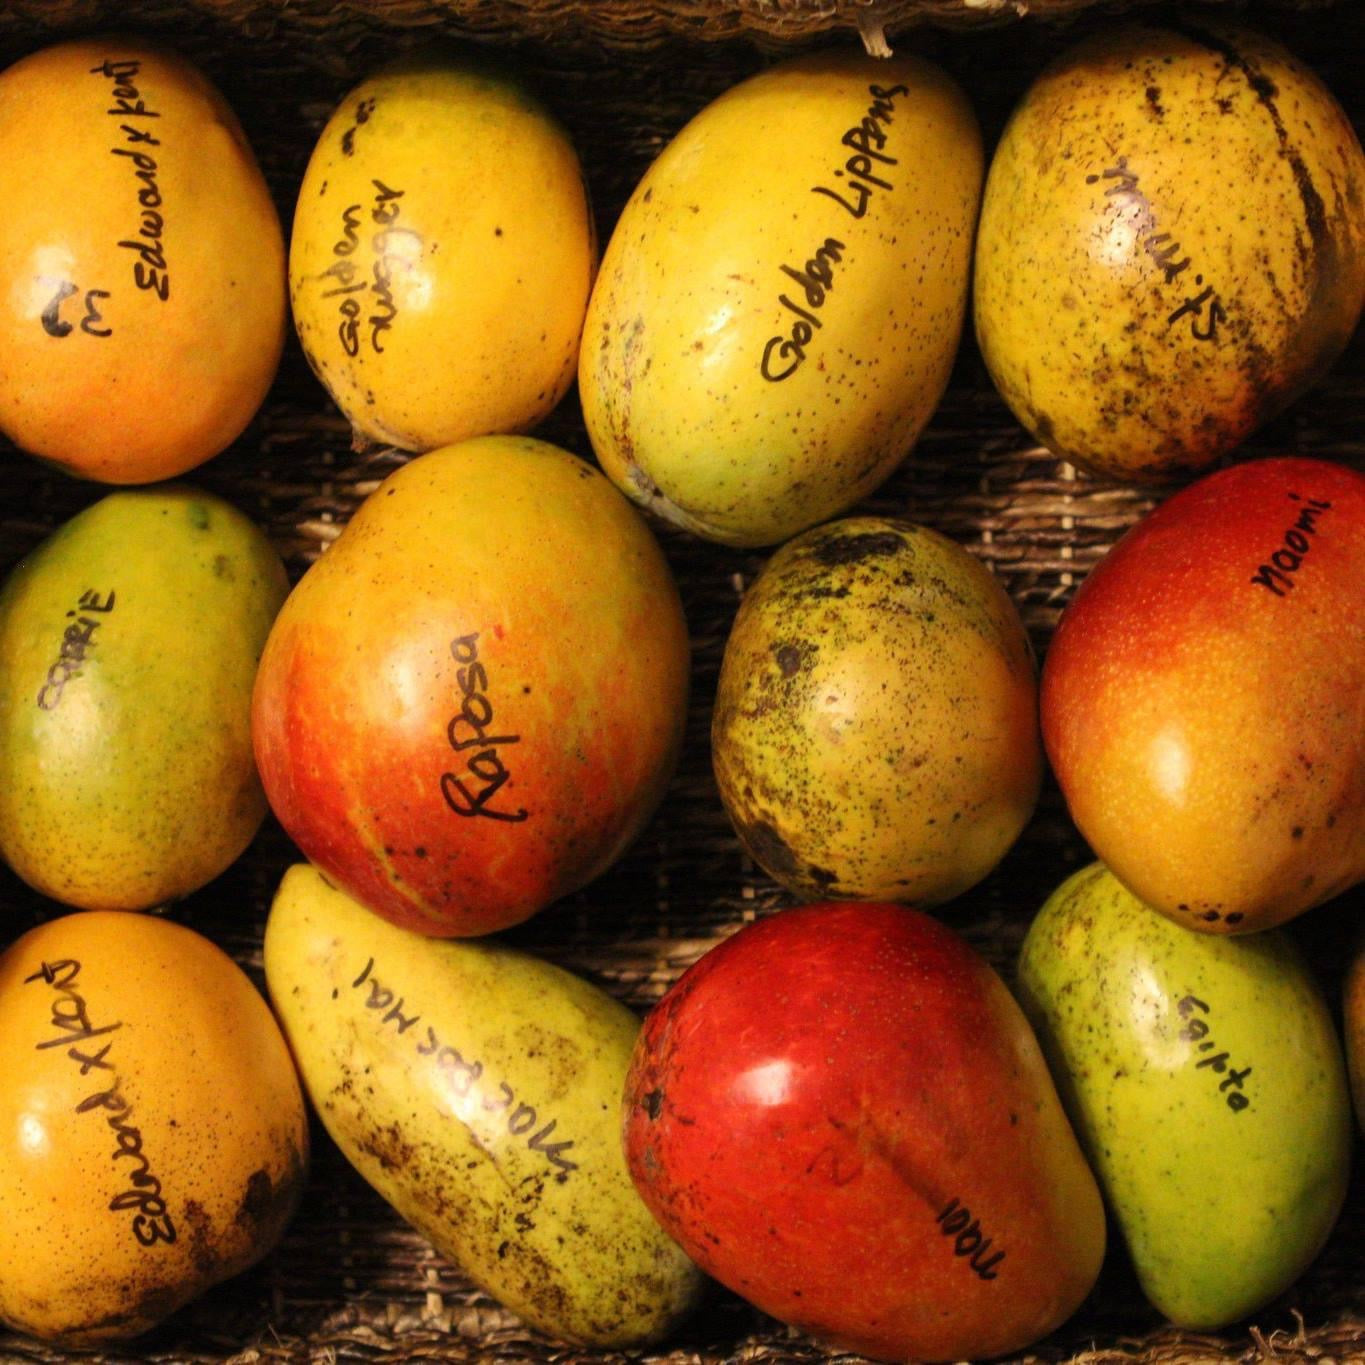 PRE-ORDER Glenn Mango Fruit Box 5 lbs (For June-July)